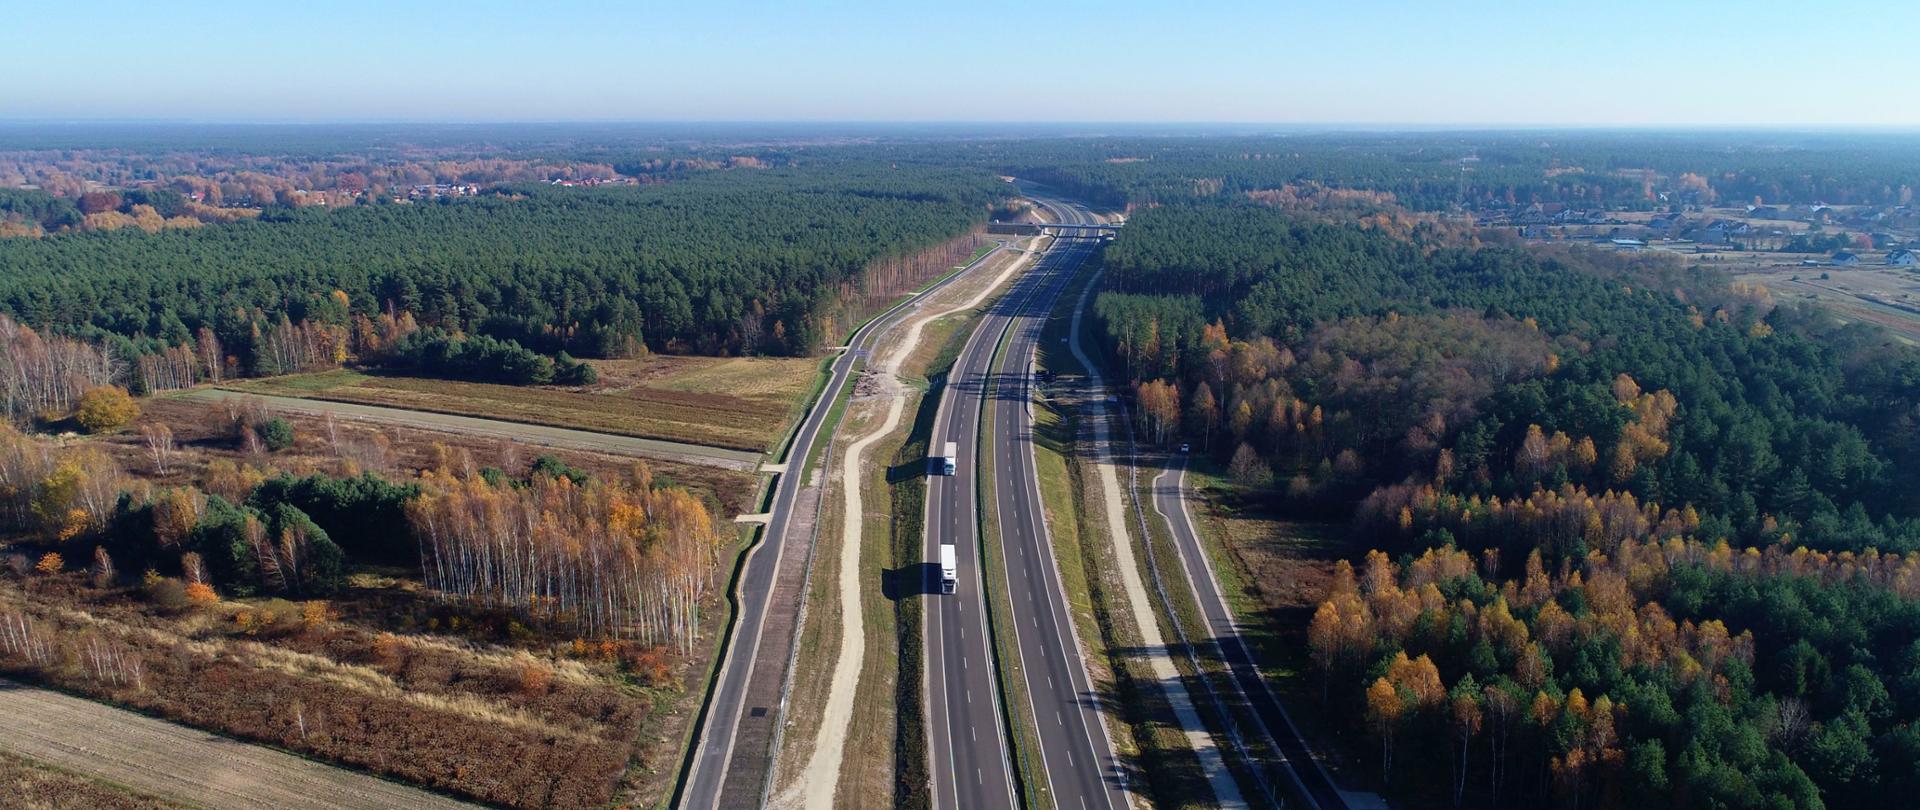 Widok na odcinek drogi ekspresowej S19. Dwie jezdnie po dwa pasy ruchu oddzielone pasem zieleni. Droga przebiega przez tereny leśne. Drzewa w kolorach jesieni.